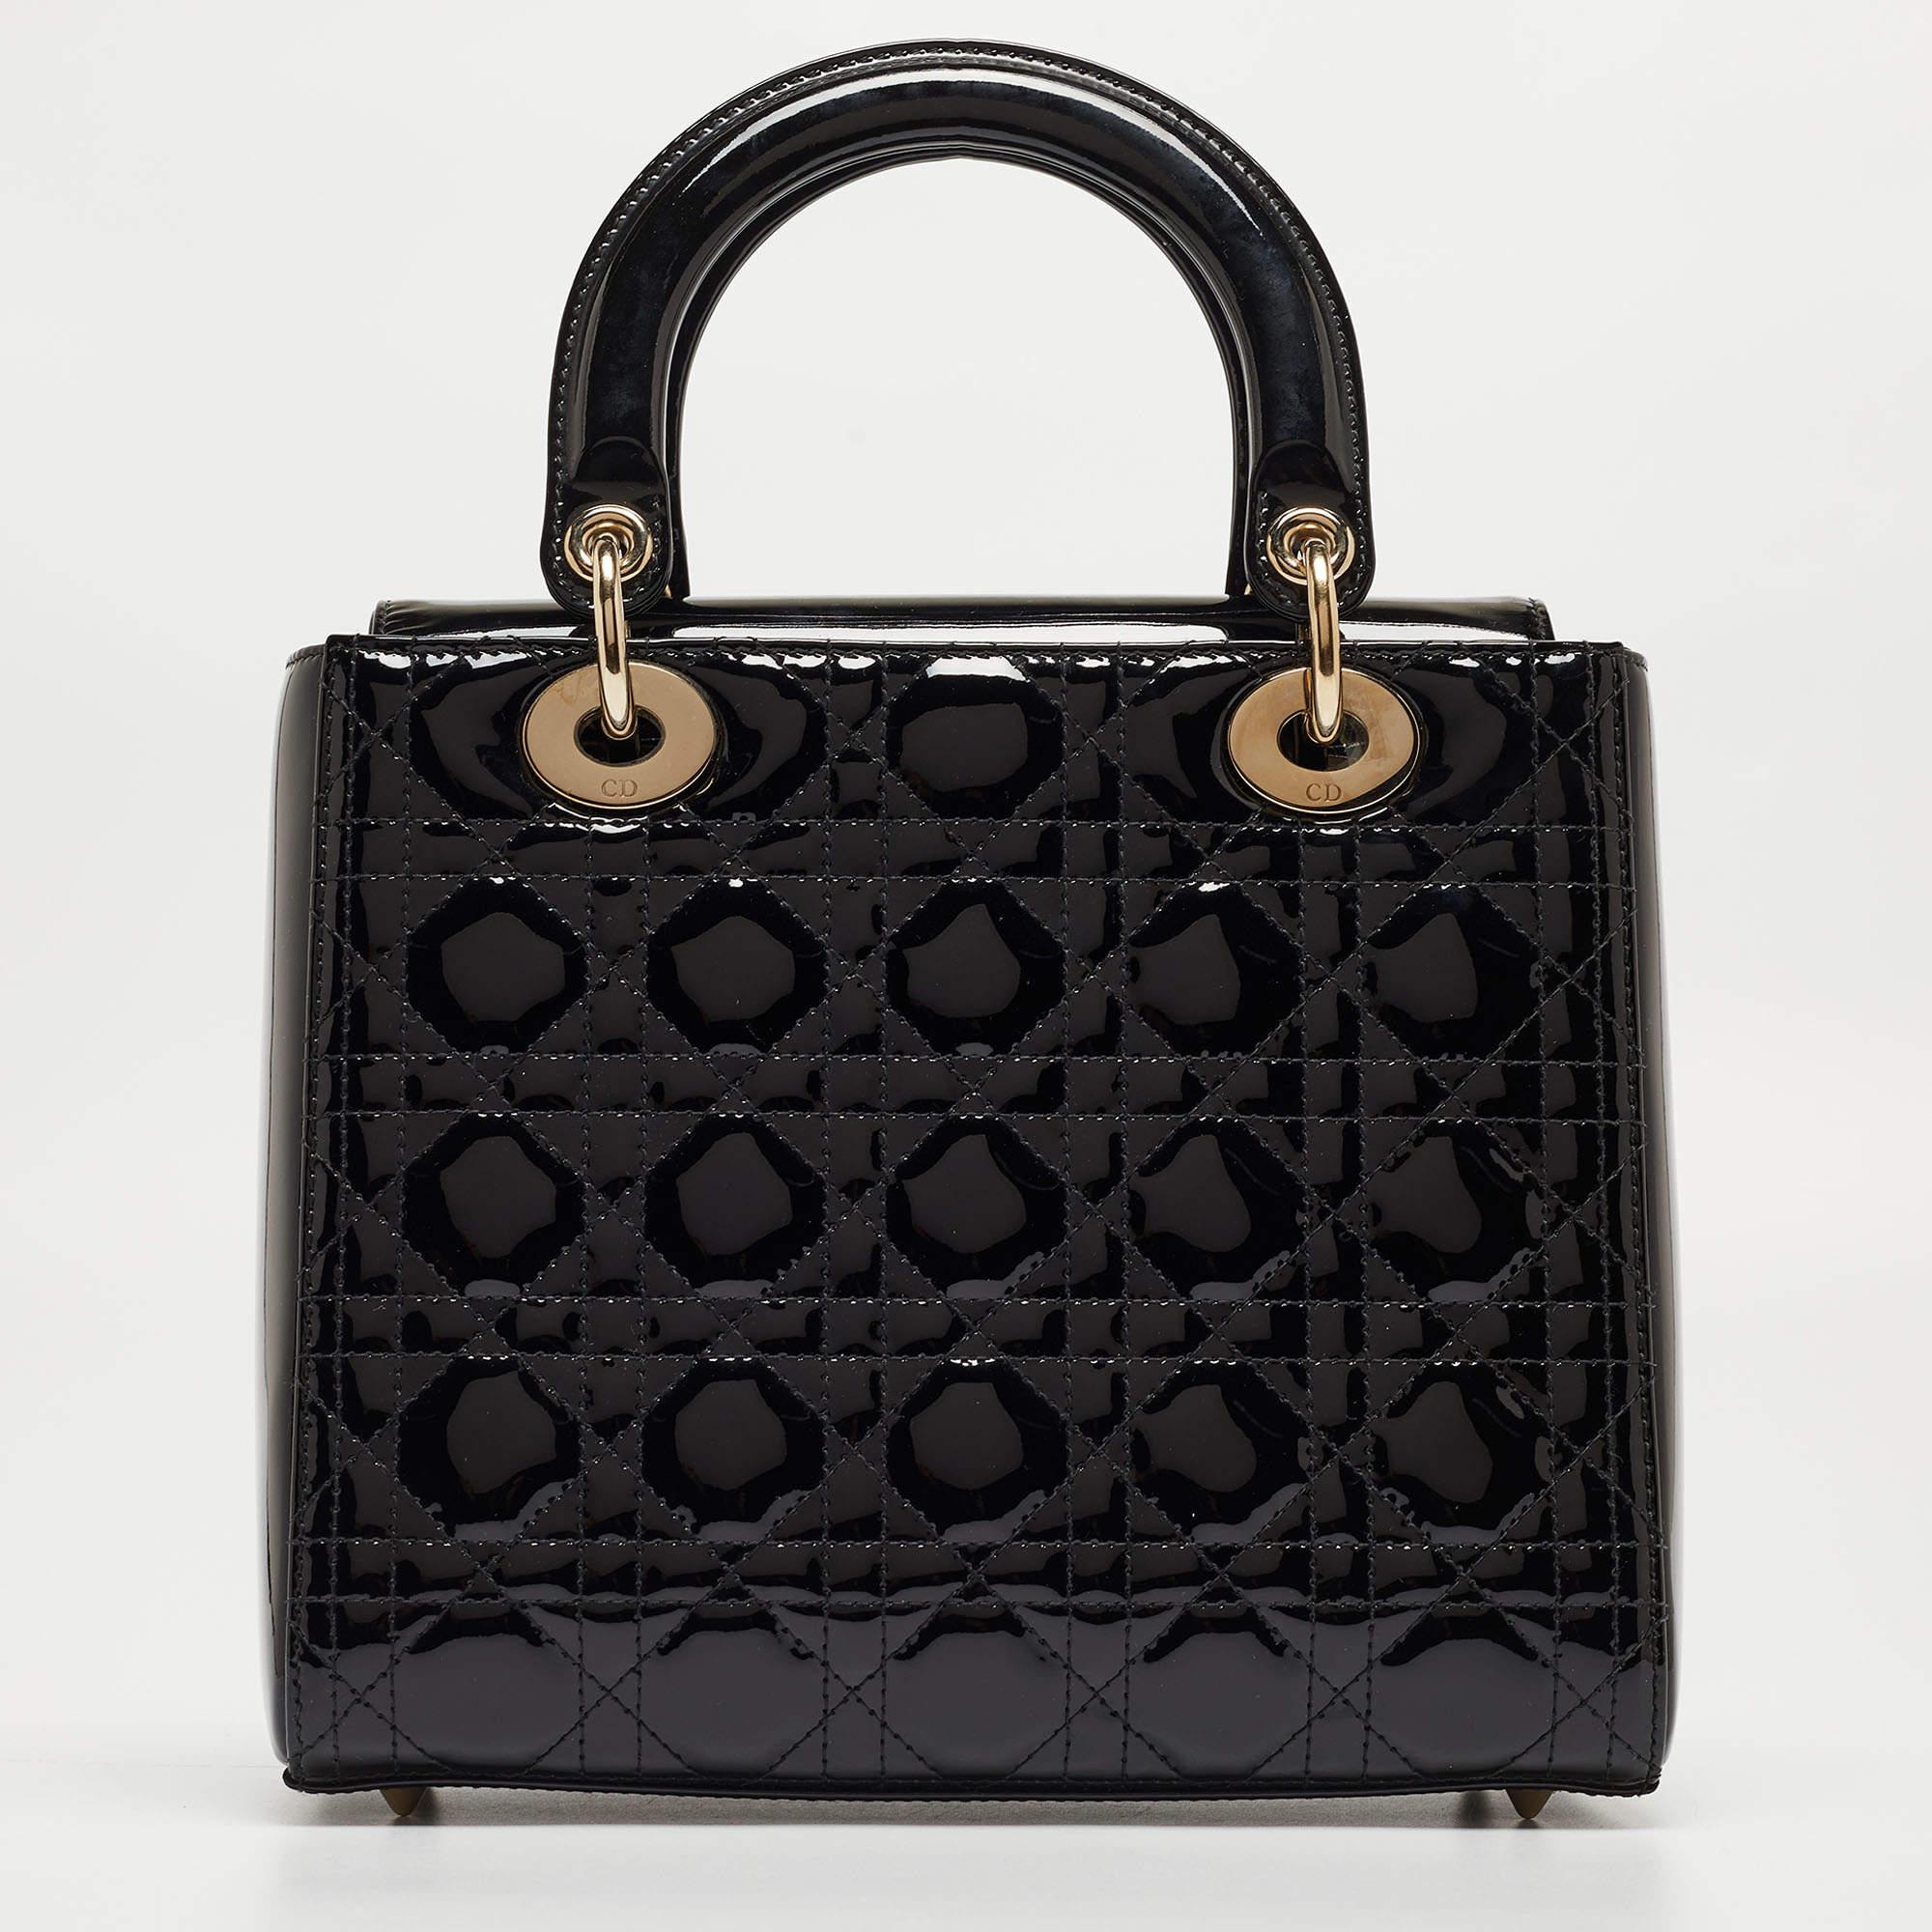 Mit dieser Tasche von Lady Dior haben Sie alles Wichtige für den Tag dabei und Ihr Outfit ist komplett. Die aus den besten MATERIALEN gefertigte Tasche trägt die Handschrift der Maison Maison für kunstvolle Handwerkskunst und dauerhafte